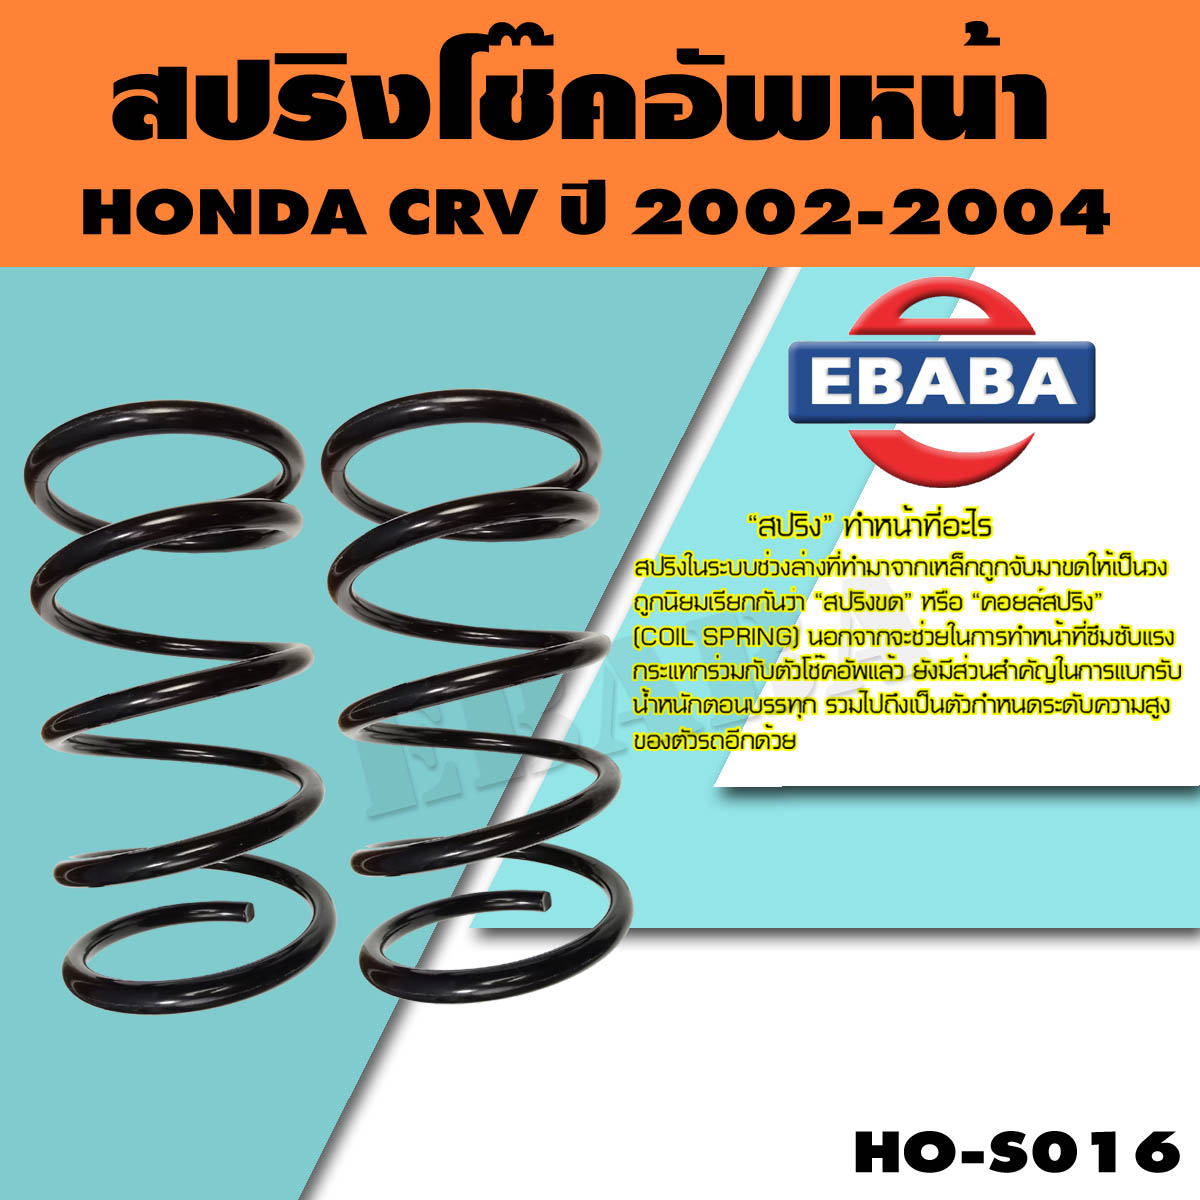 สปริง โช้คอัพหน้า สำหรับ HONDA CRV ปี 2002-2004 รหัสสินค้า HO-S016 ( 1คู่ ) ยี่ห้อ NDK